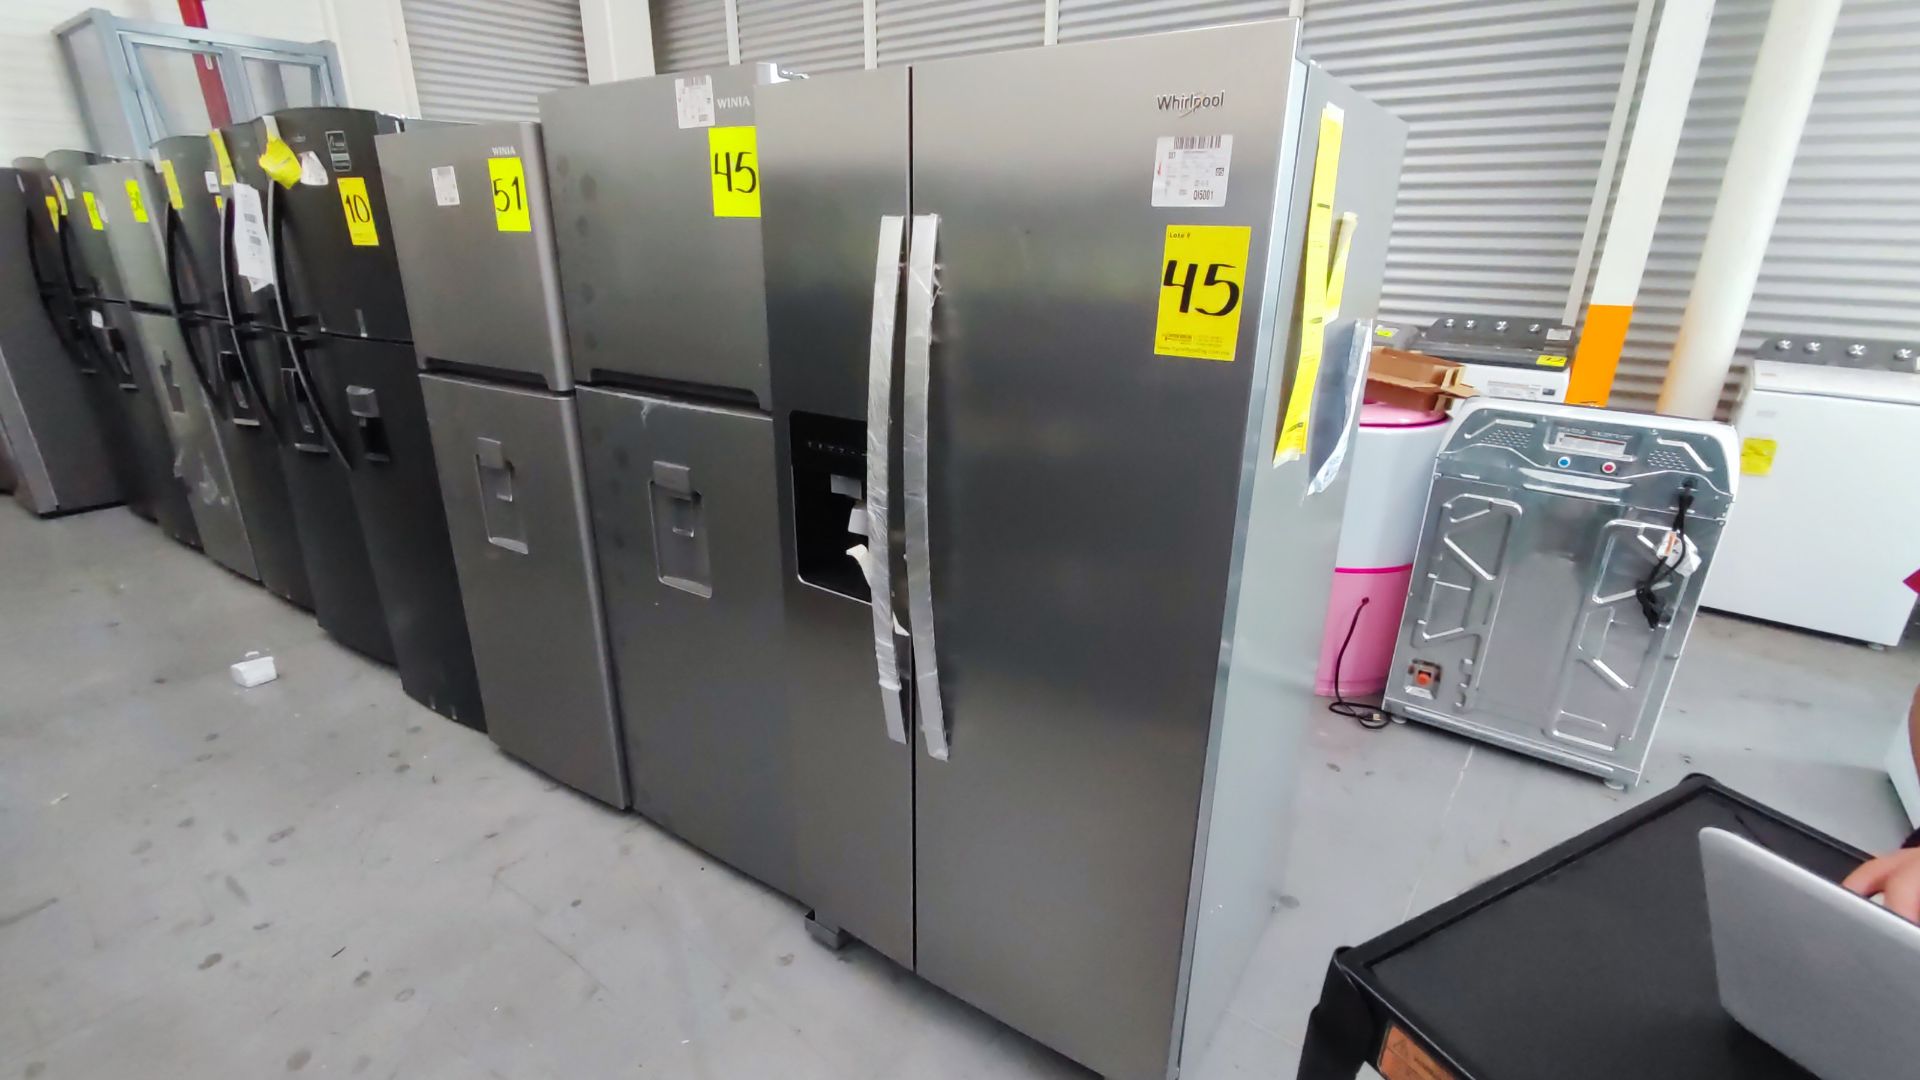 Lote Conformado por 2 Refrigeradores, Contiene; 1 Refrigerador con Dispensador de Agua Marca Whirlp - Image 2 of 13